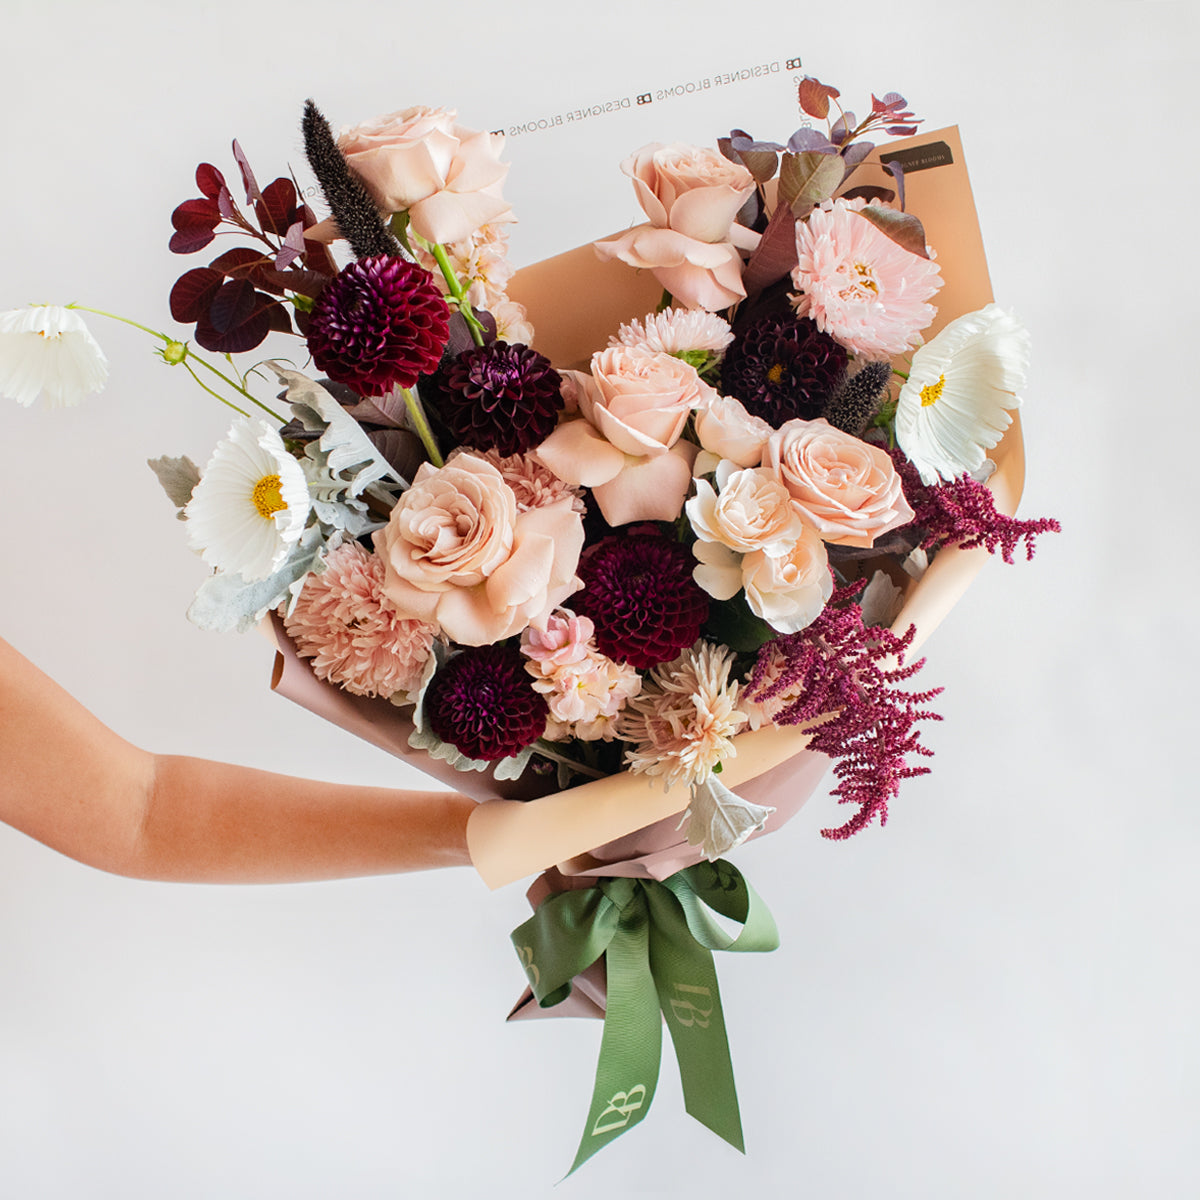 Araw Bouquet Designer Blooms Canada